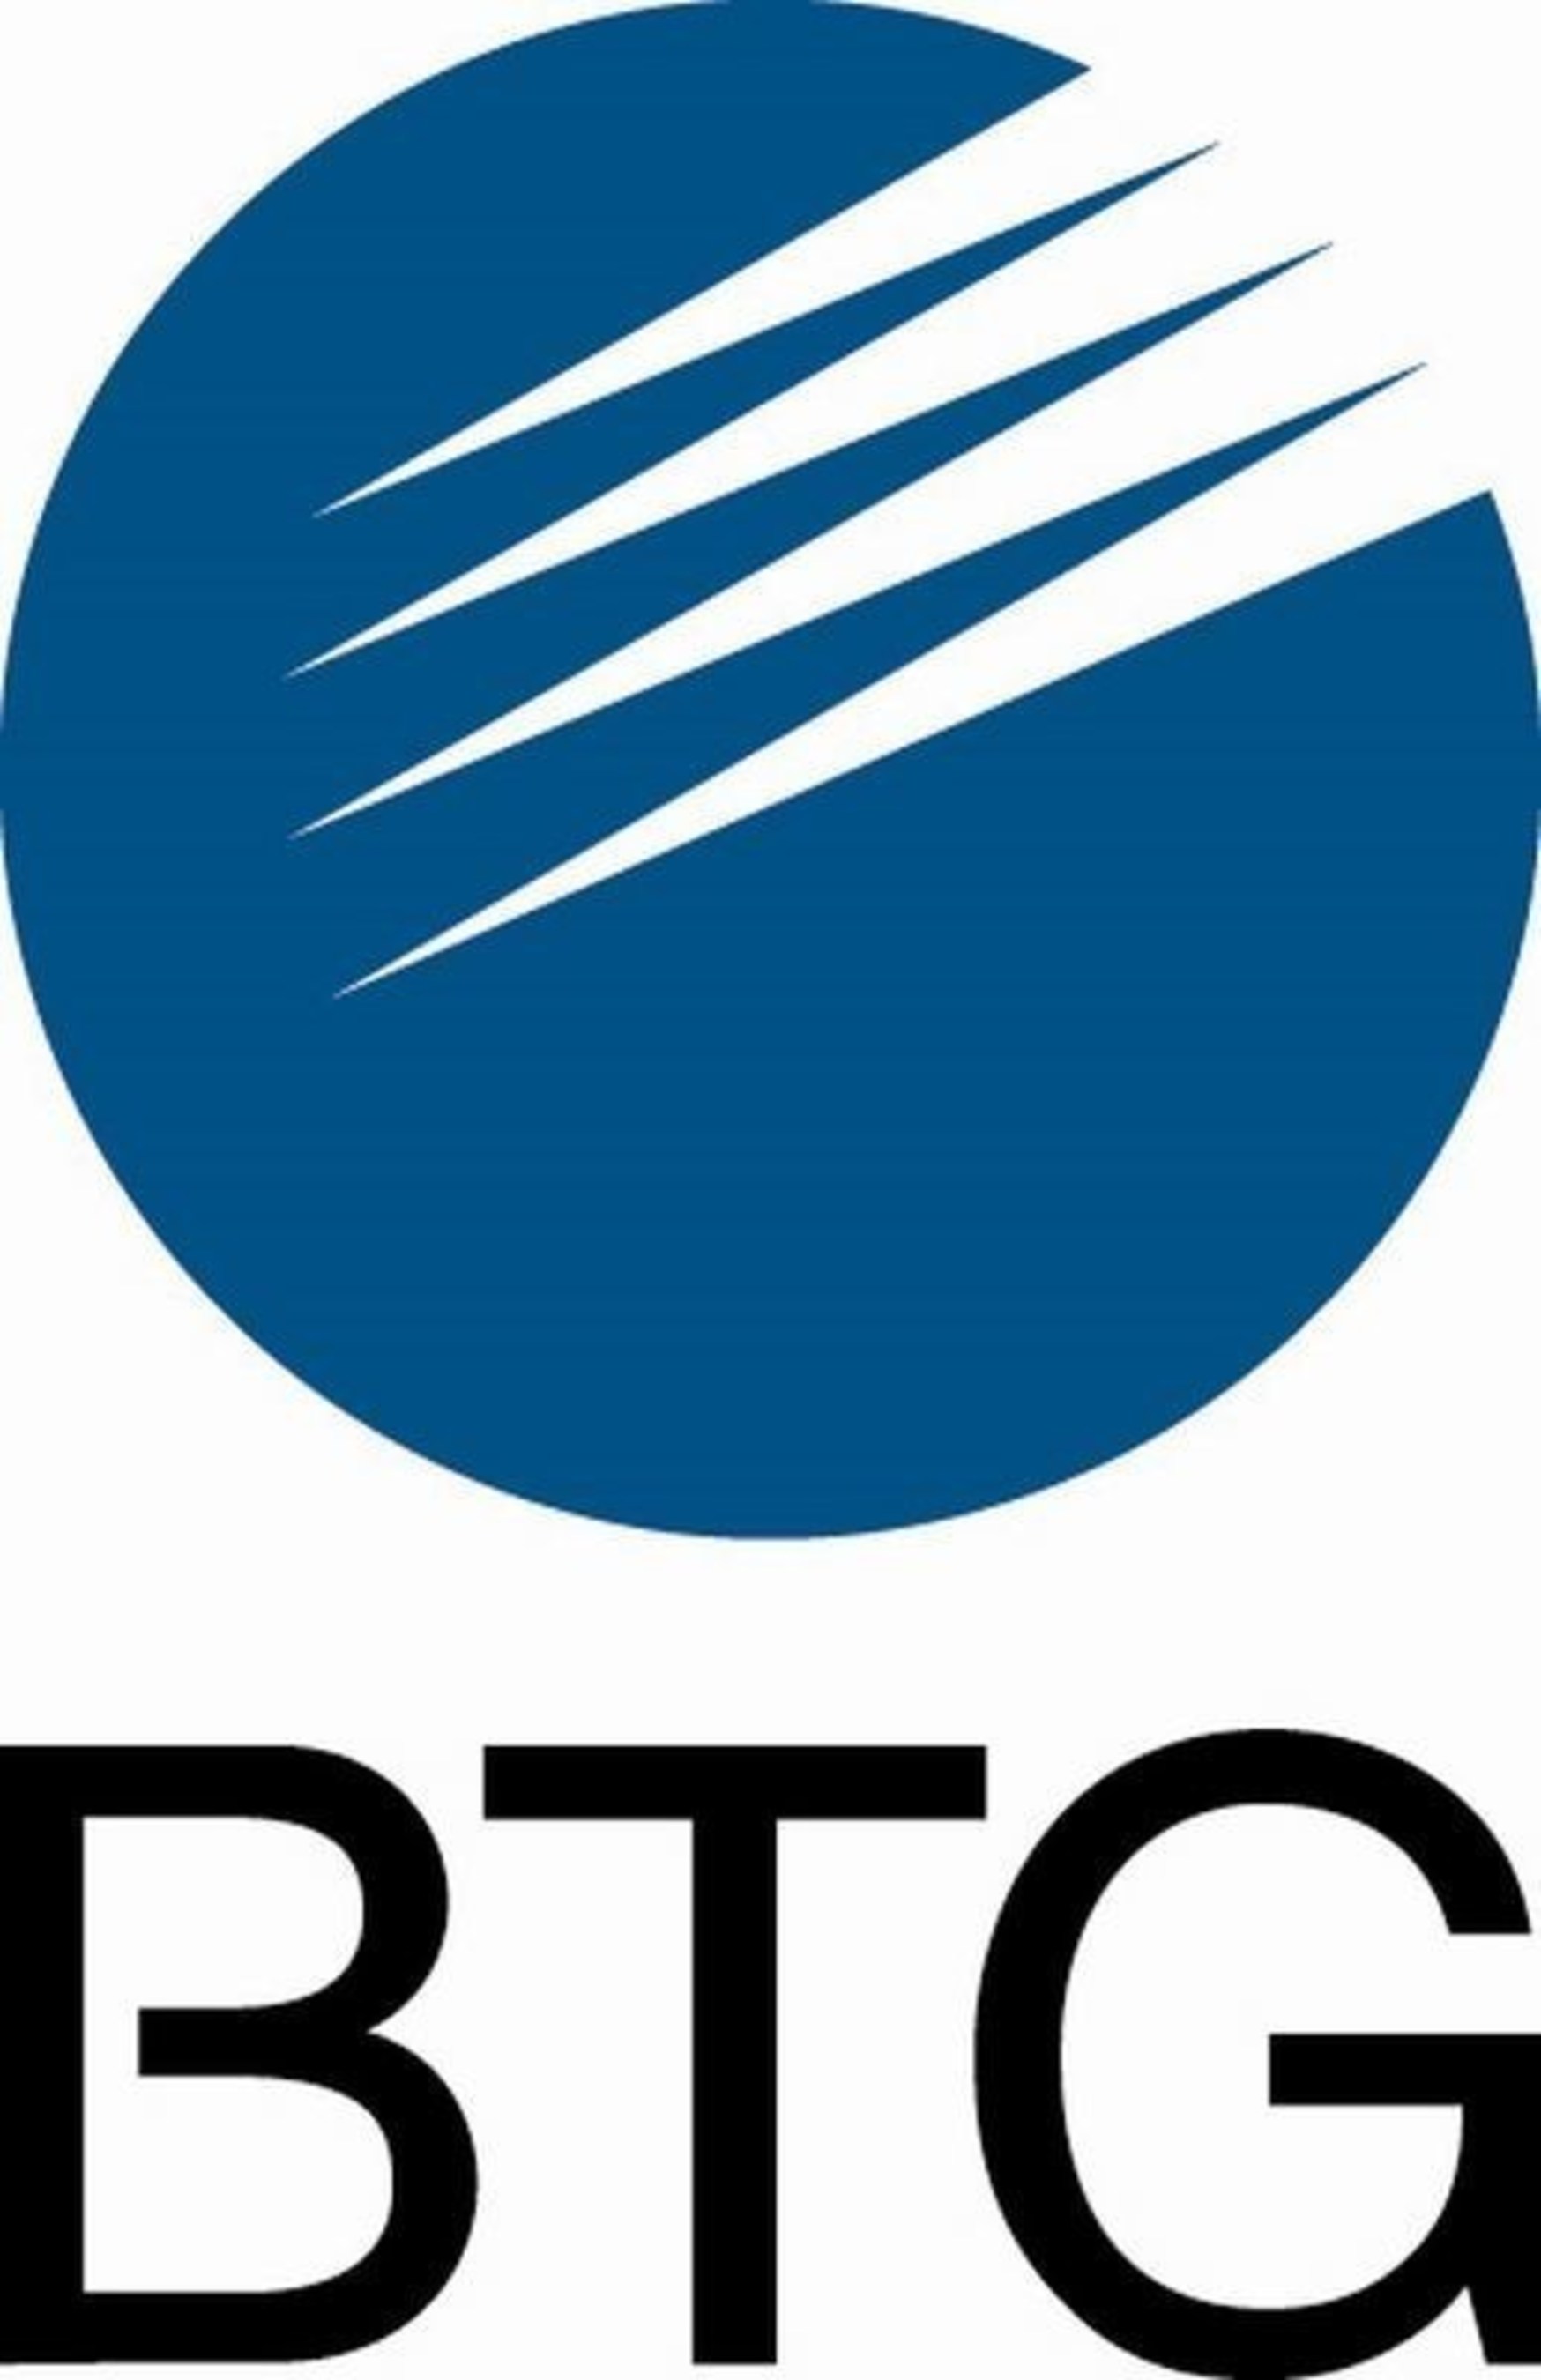 BTG Logo (PRNewsFoto/BTG Plc) (PRNewsFoto/BTG Plc)